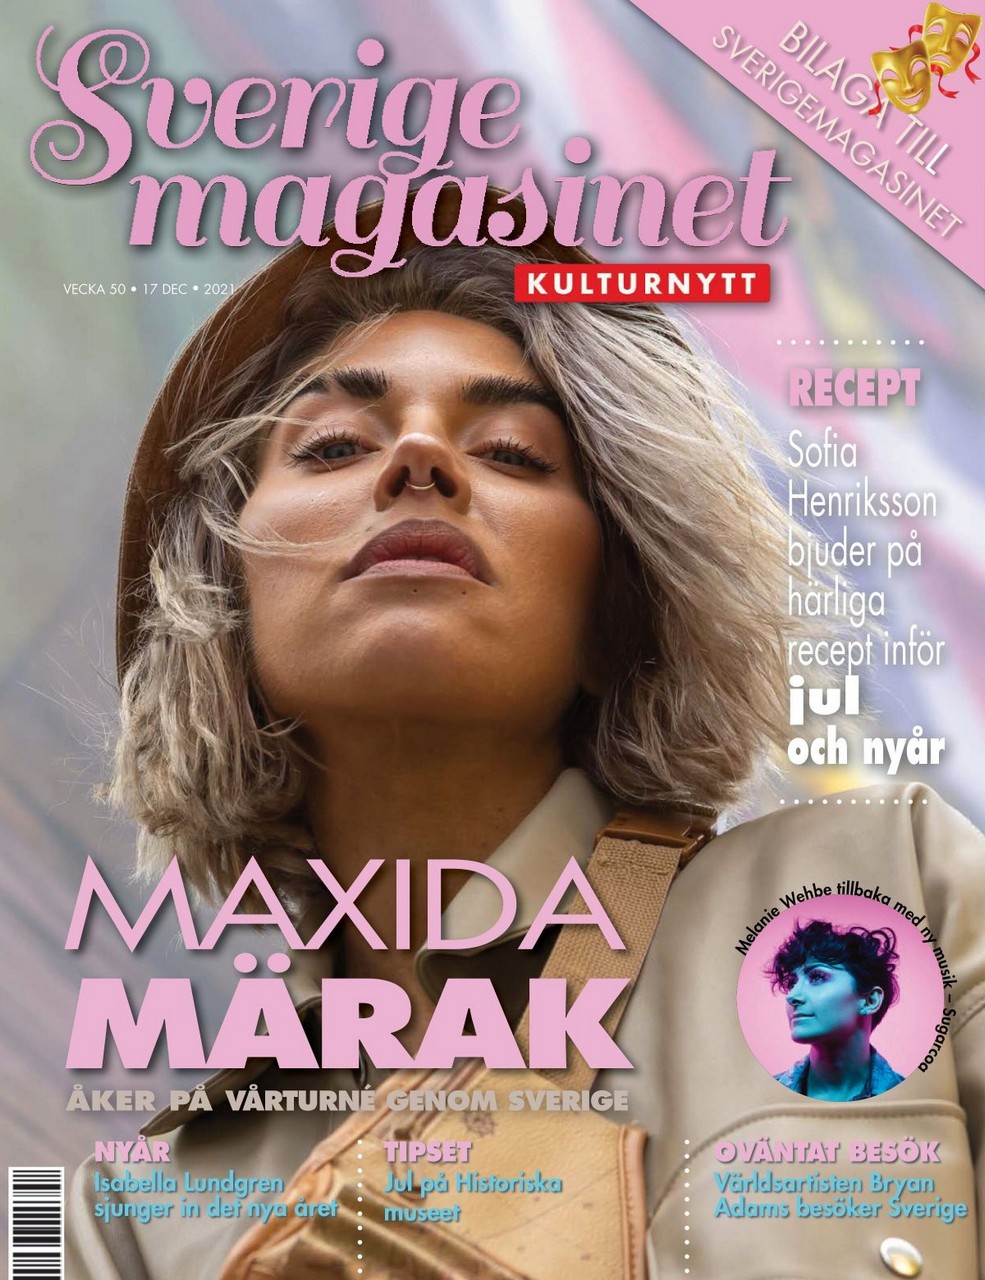 Maxida Marak For Sverigemagasinet Magazine December